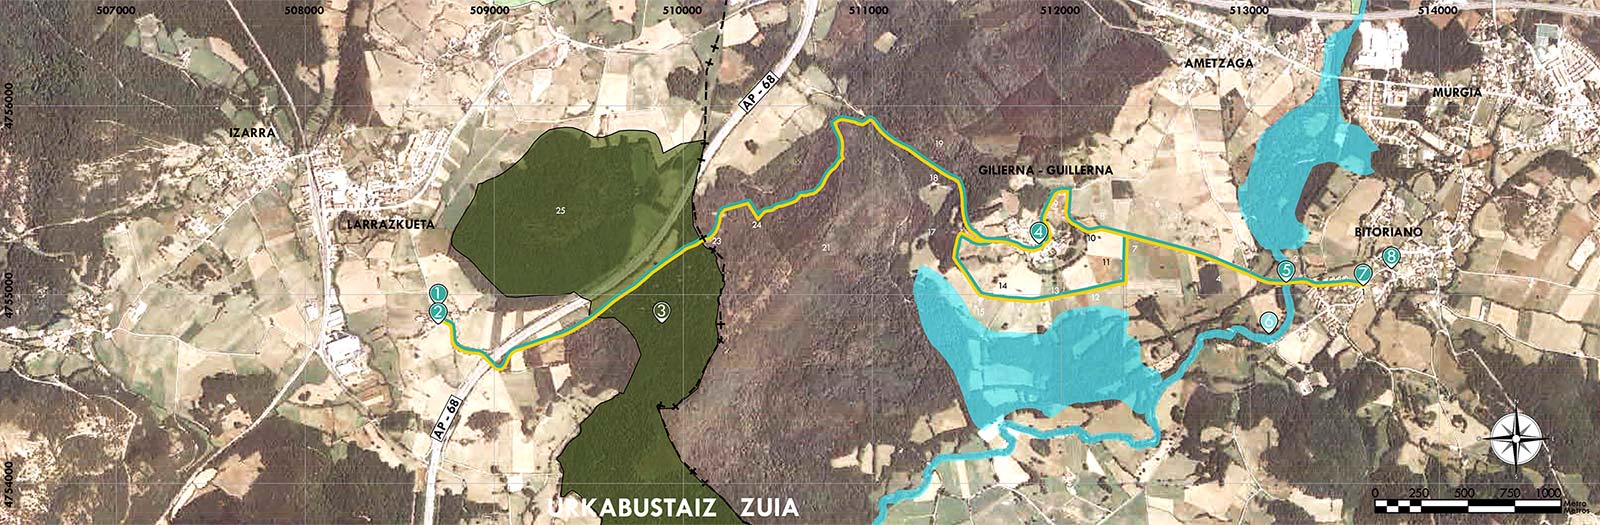 Mapa ruta Bitoriano Larrazkueta